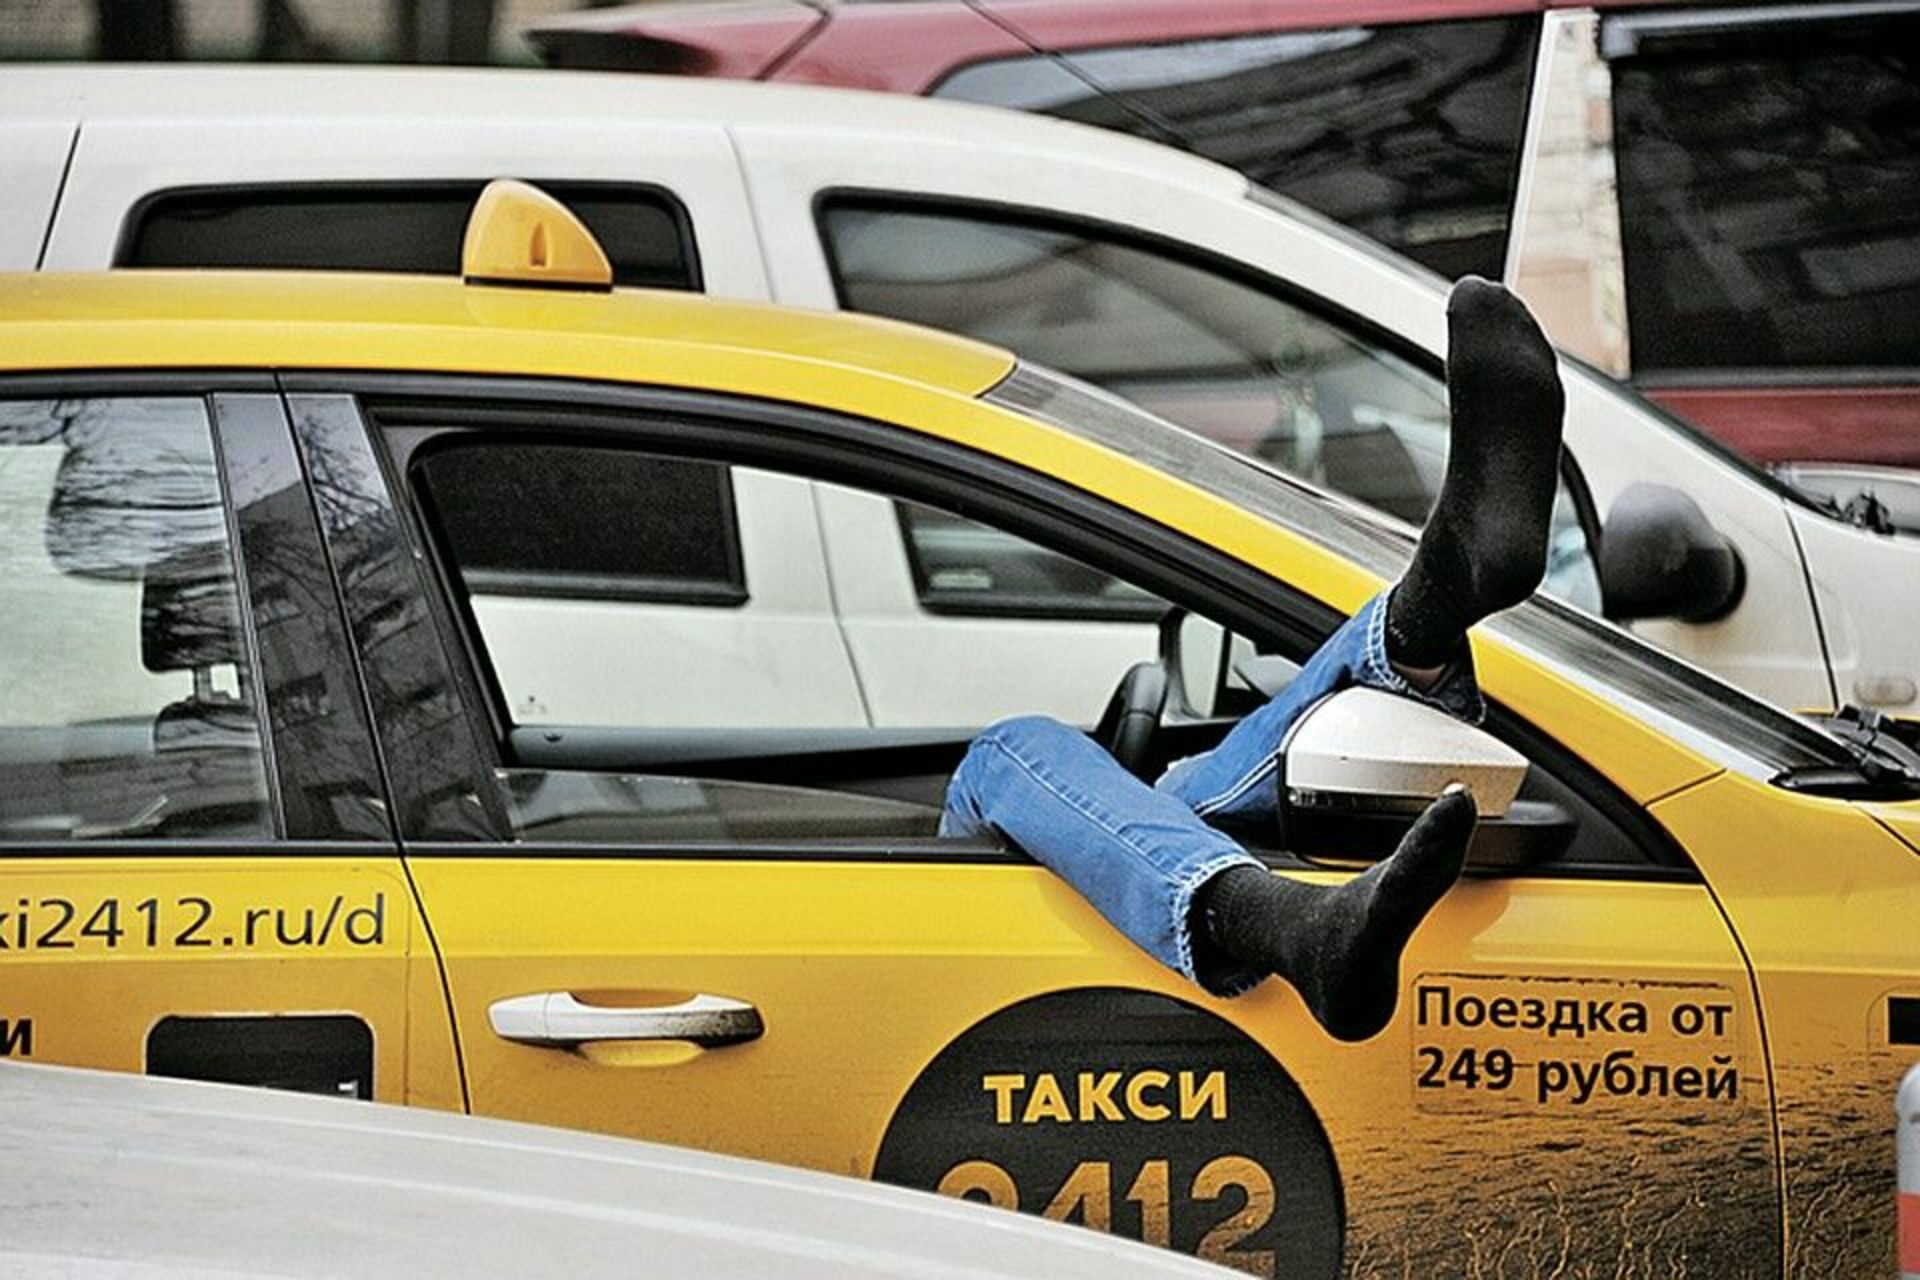 Водитель такси имеет право. Такси. Водитель такси. Водитель такси в машине. Сонный таксист.